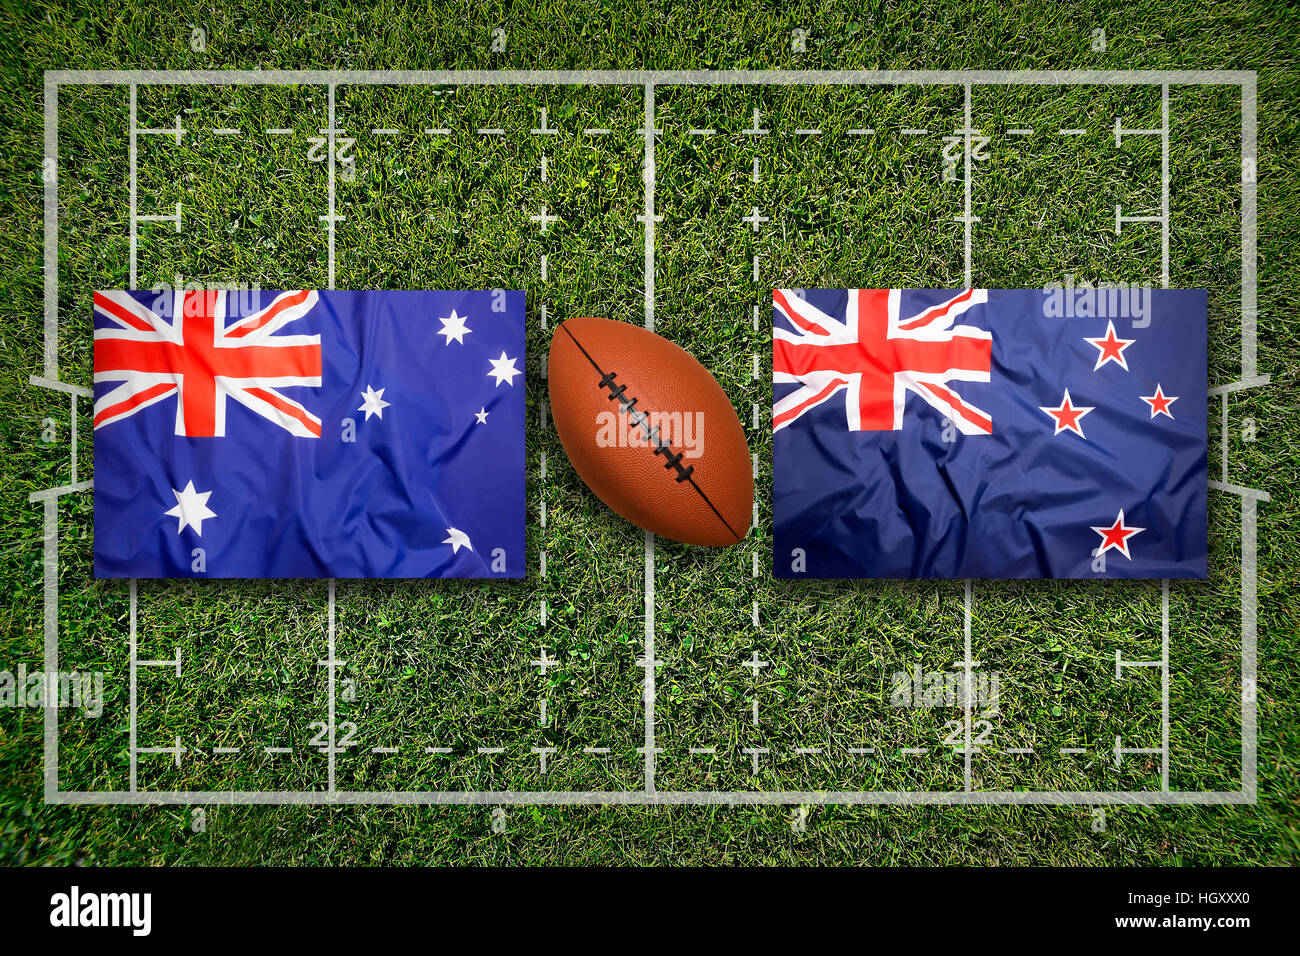 Australia vs nueva zelanda